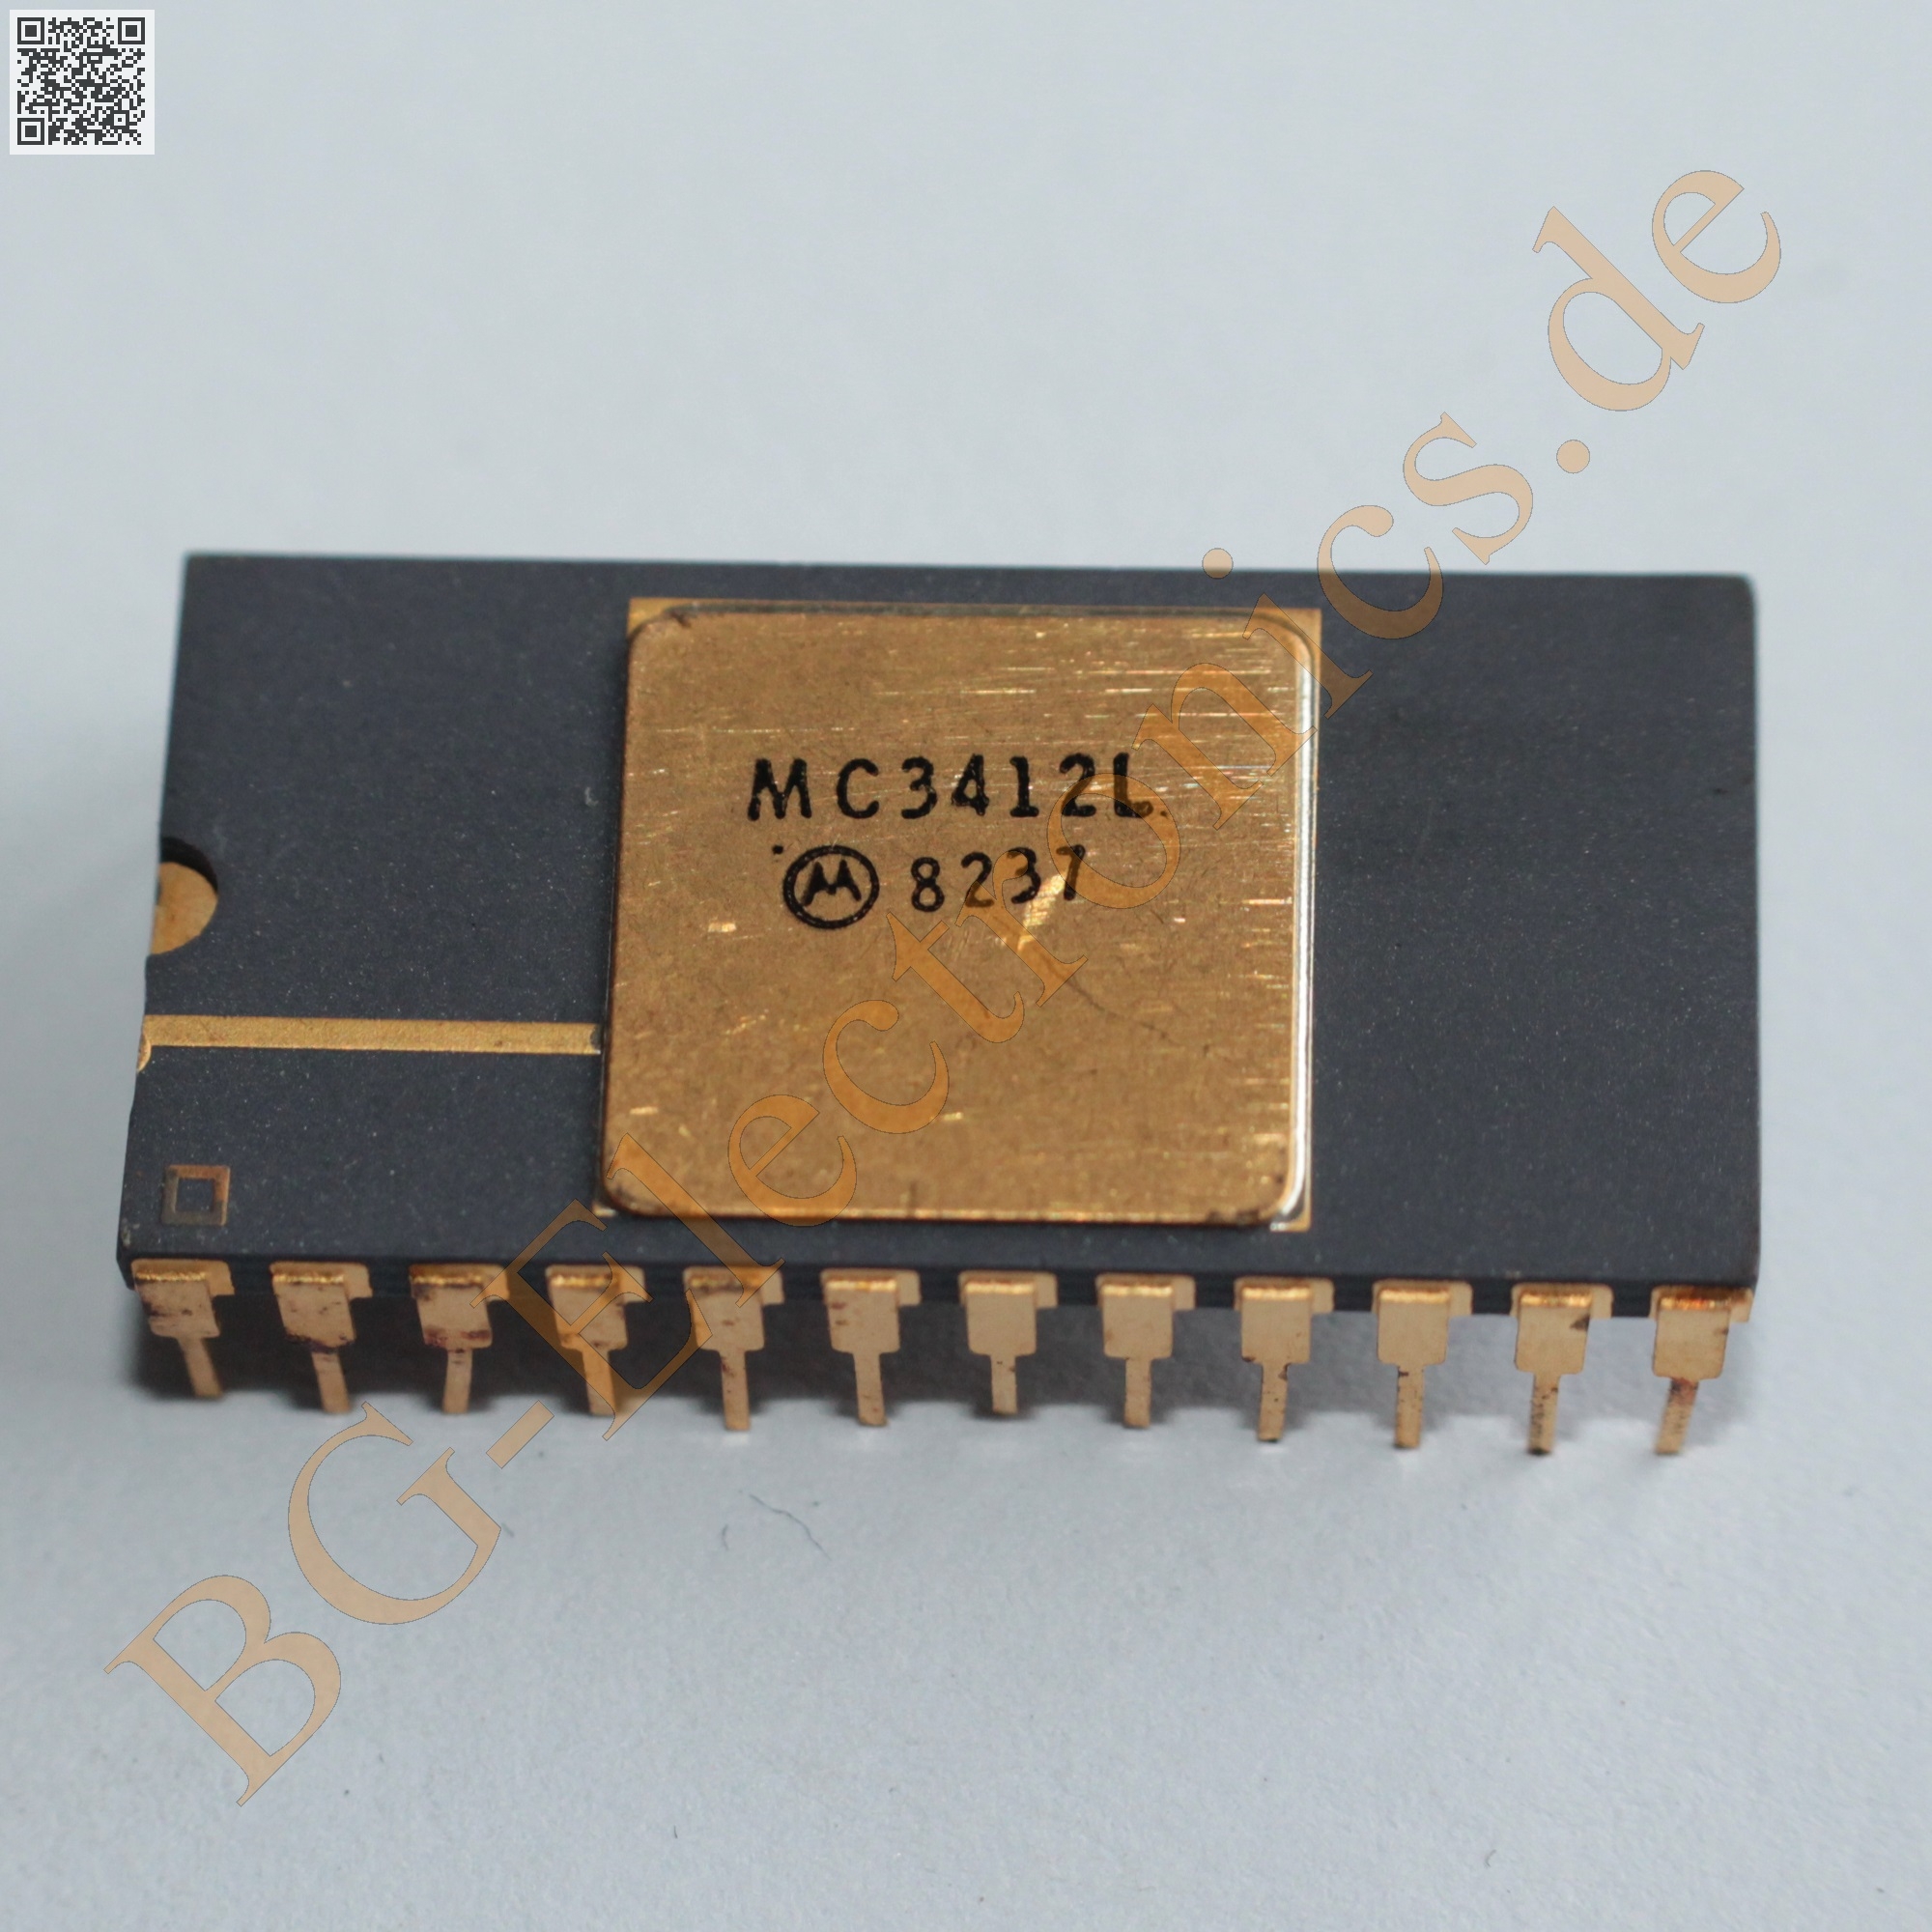 MC3412L